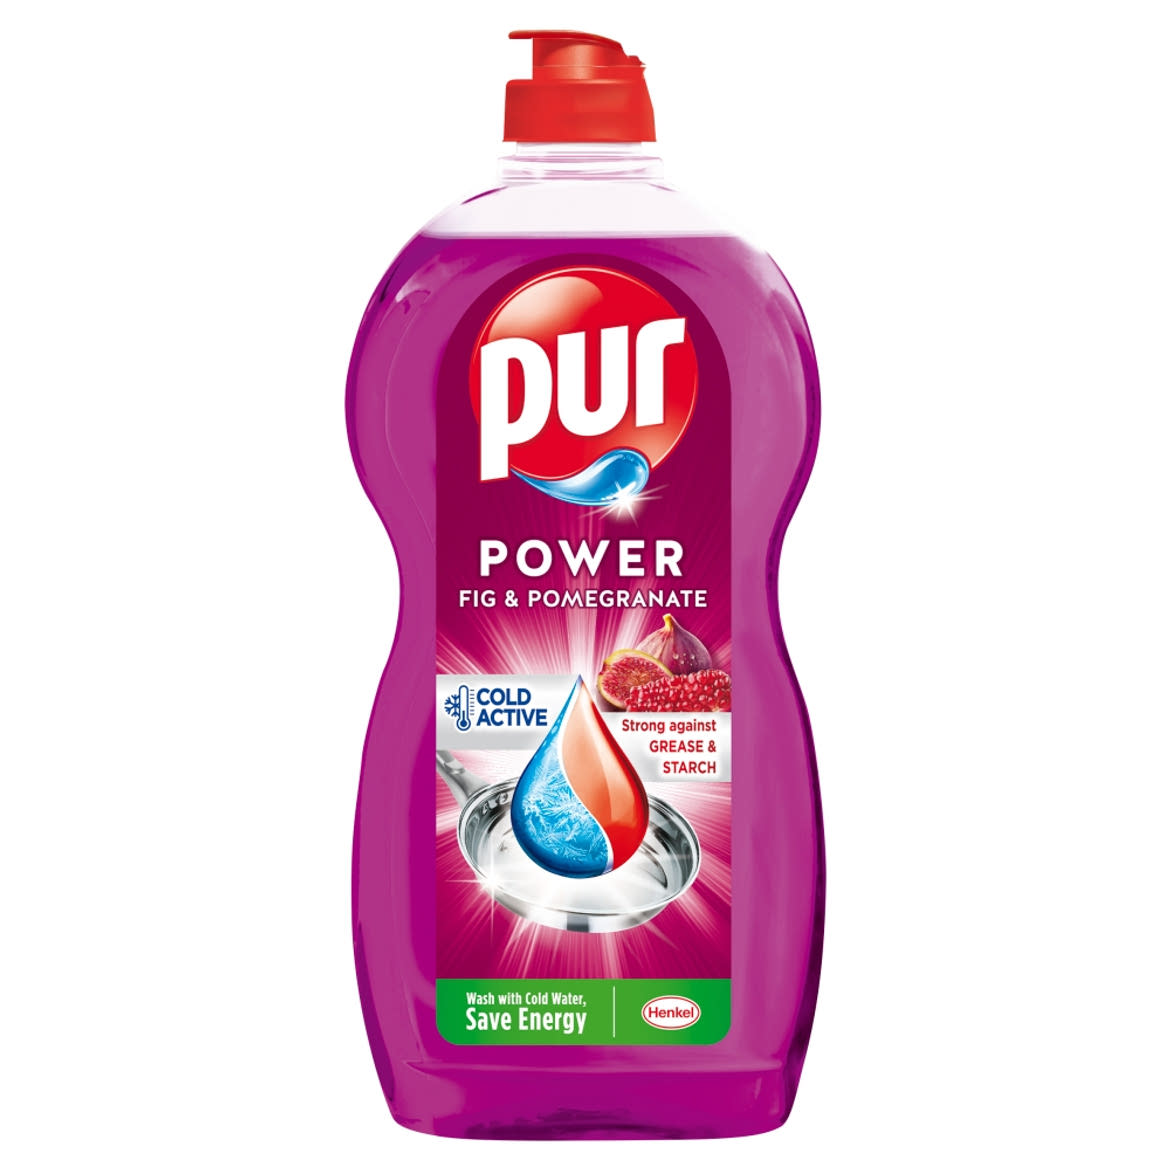 Pur Power Fig & Pomegranate kézi mosogatószer